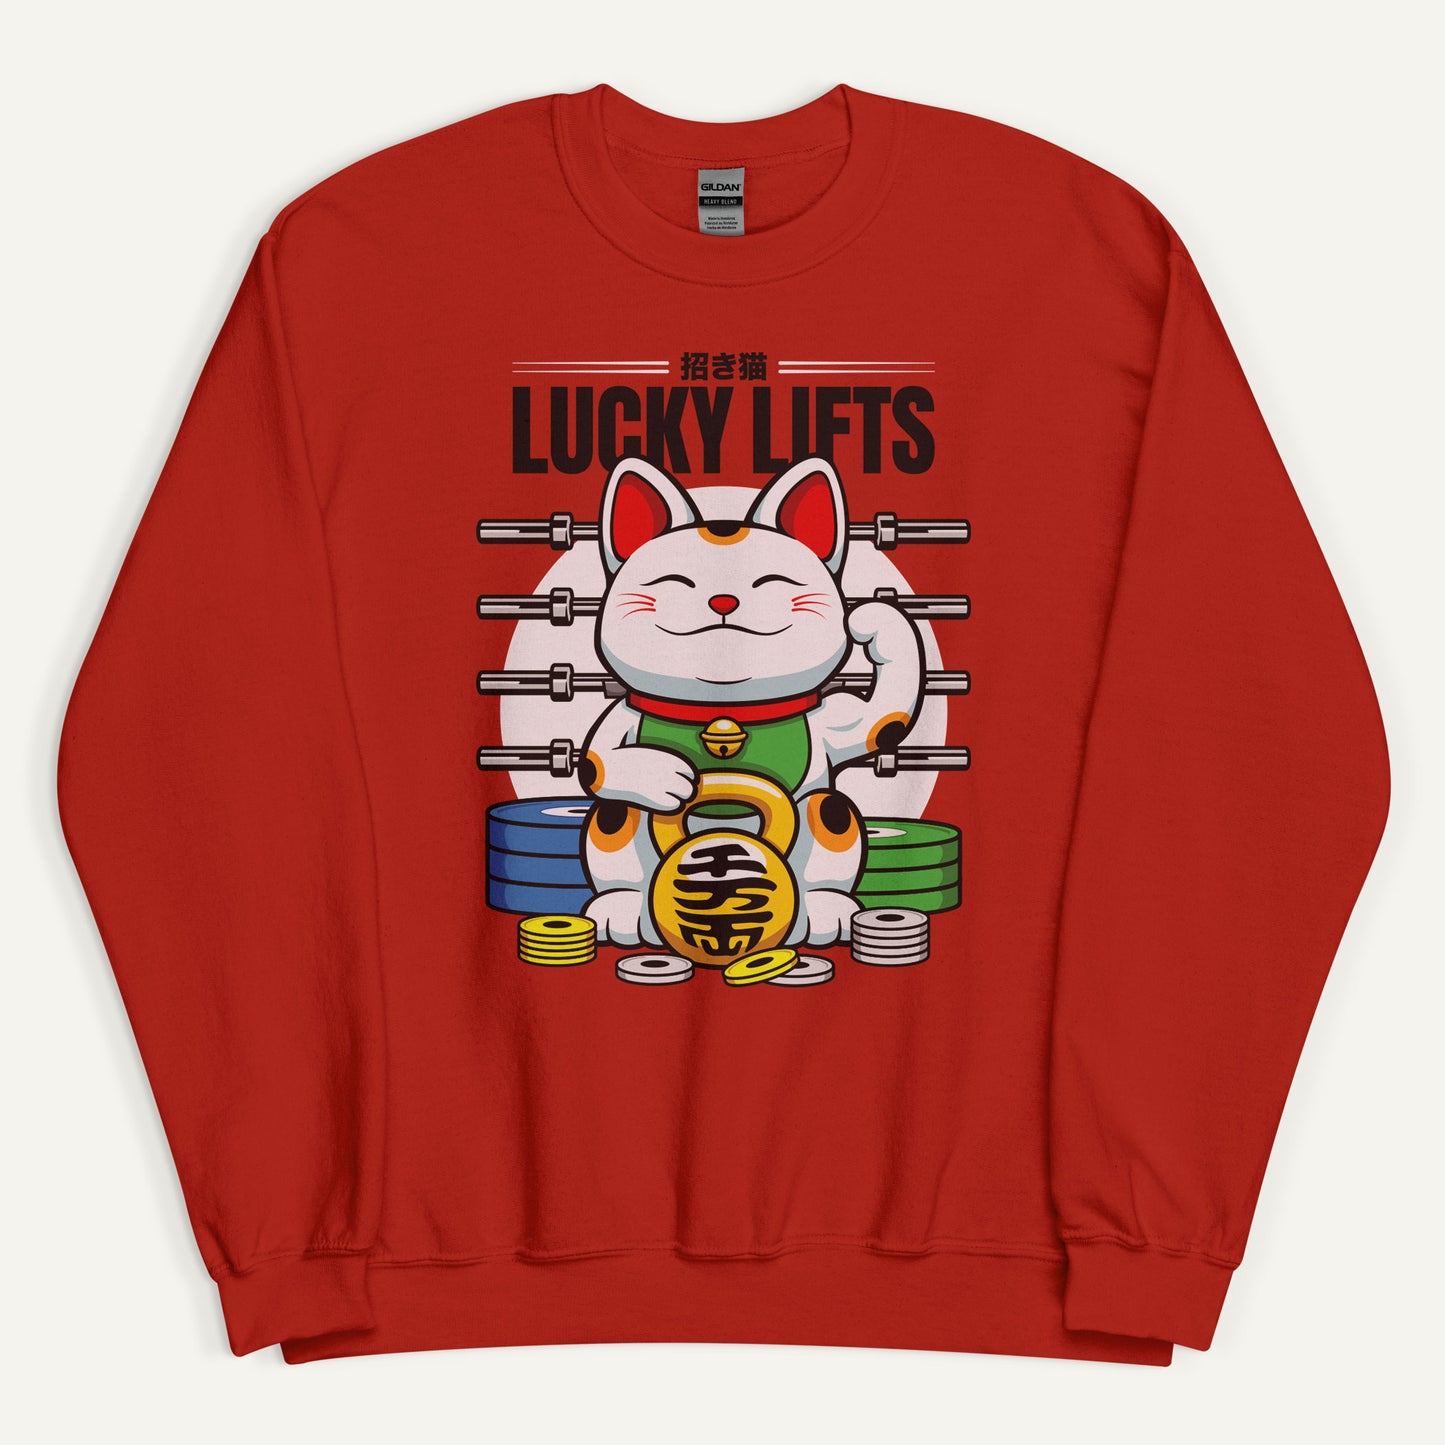 Lucky Cat Lucky Lifts Sweatshirt